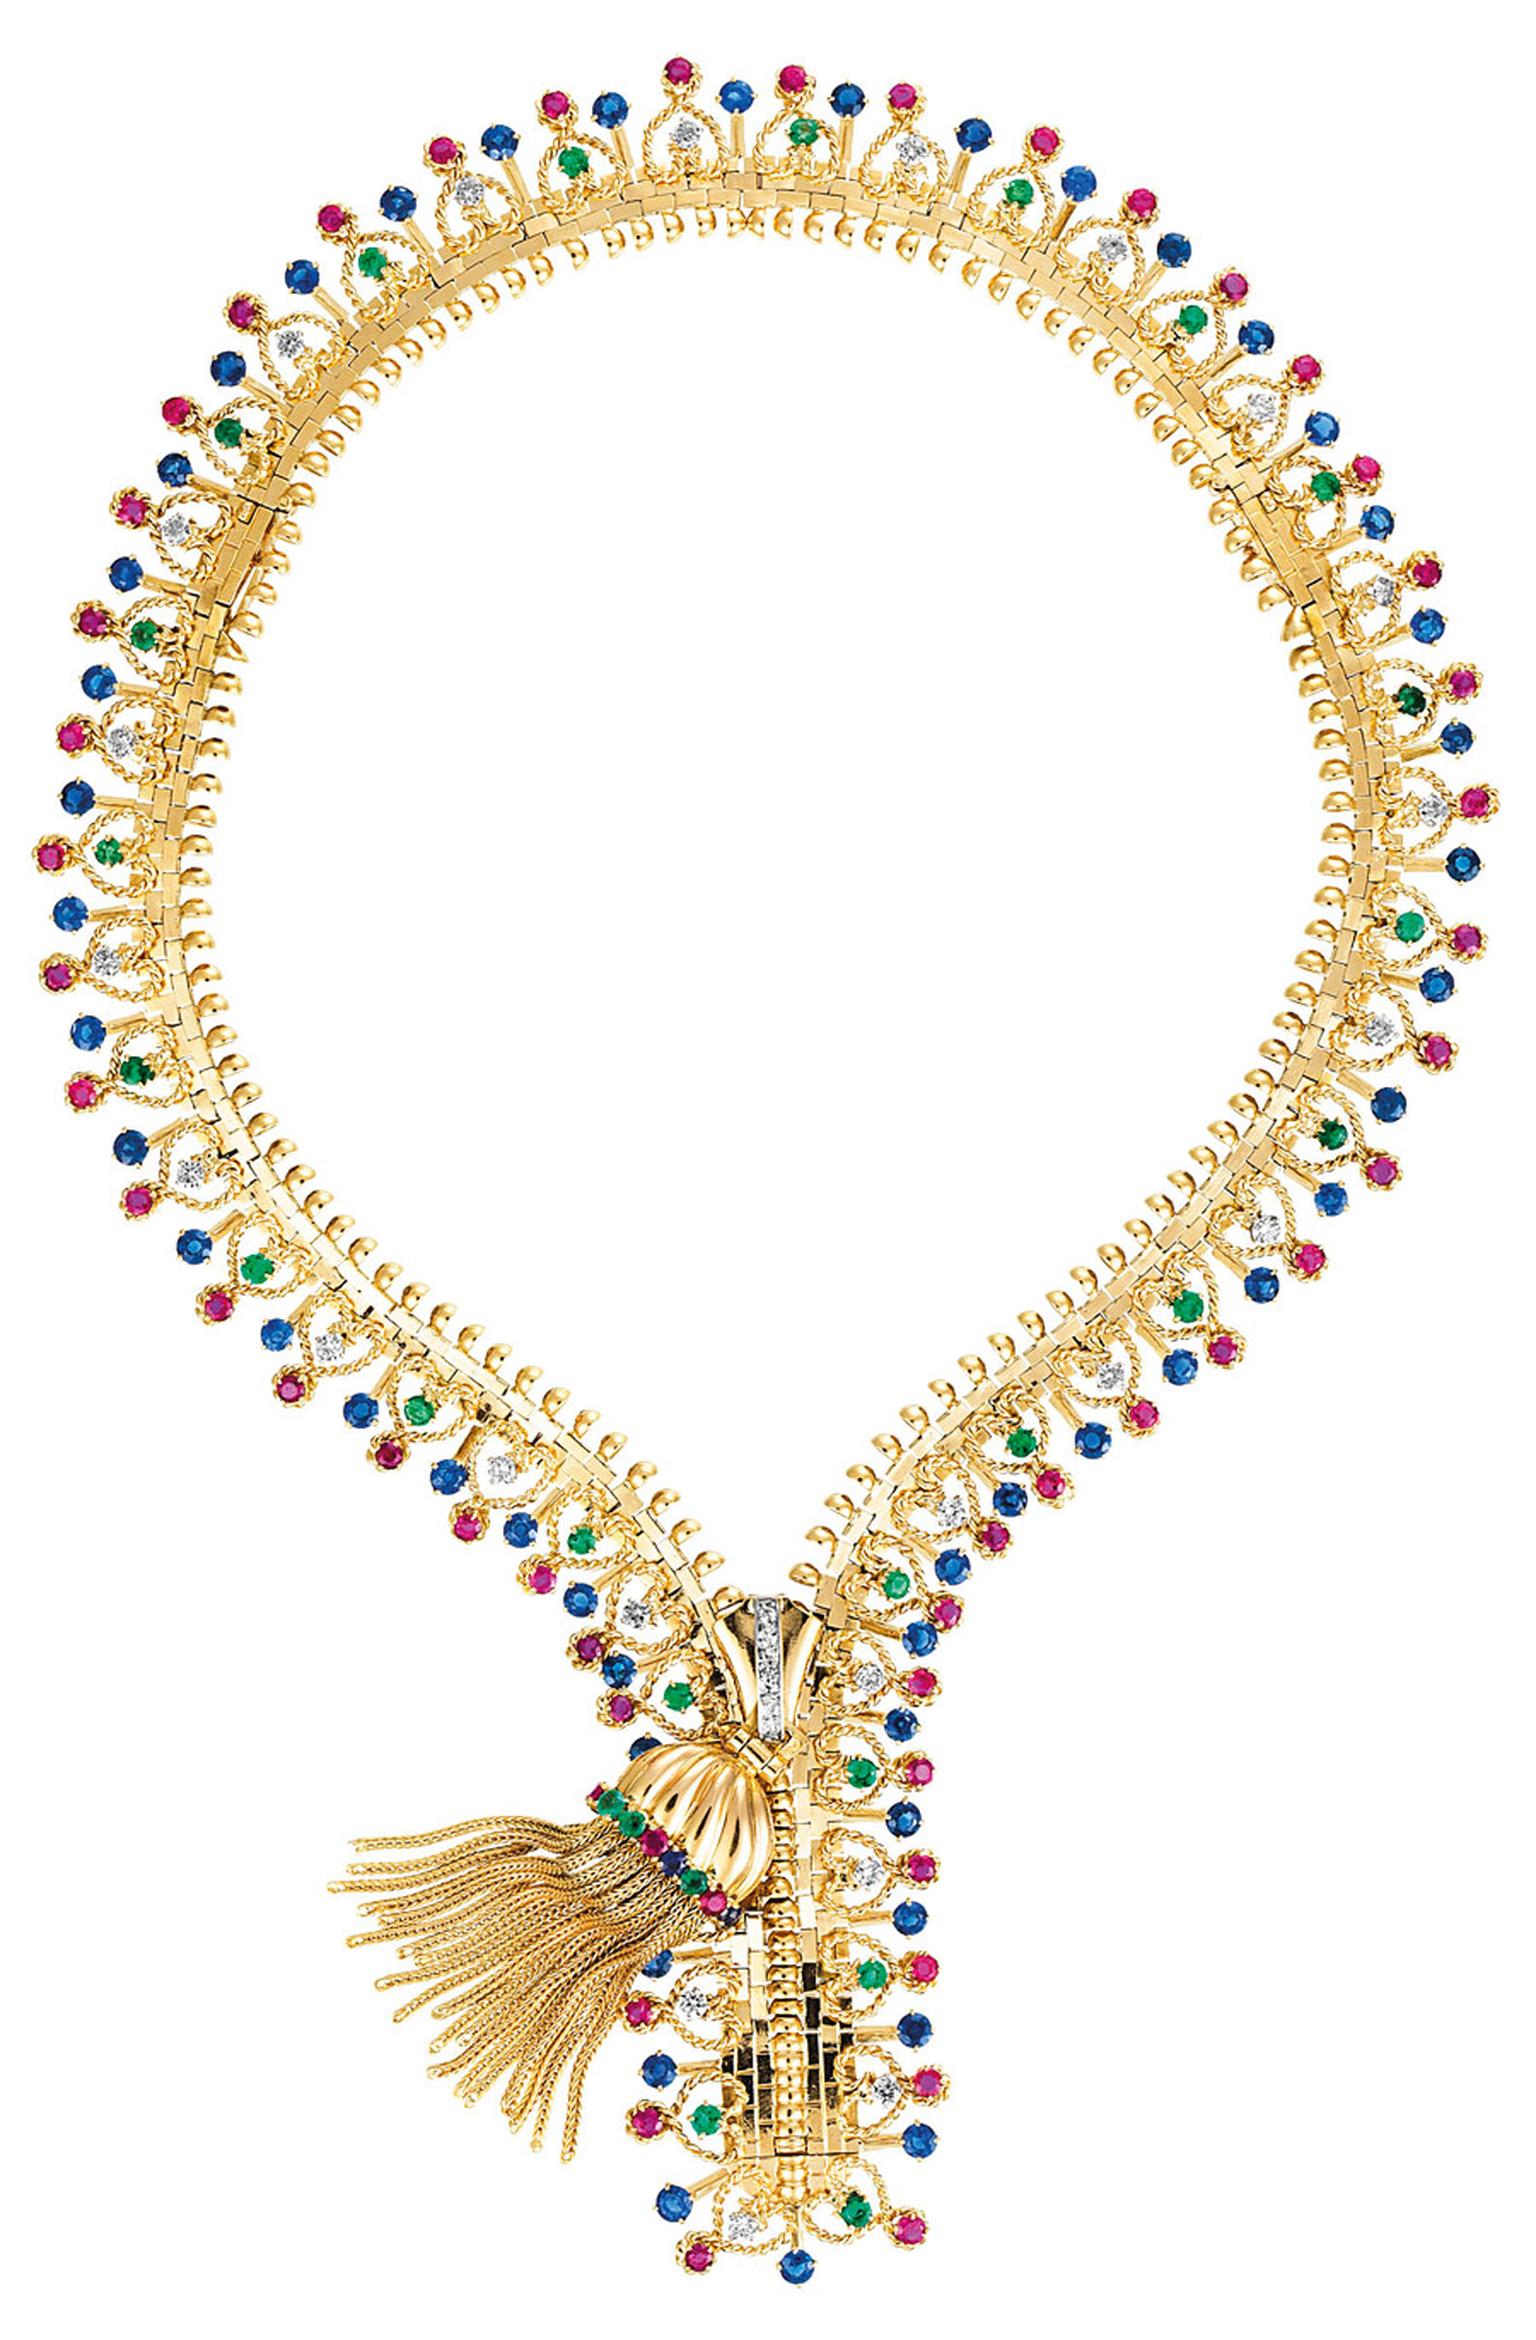 Van-Cleef-Arpels-Zip-necklace-1951-Van-Cleef-Arpels-Collection.jpg